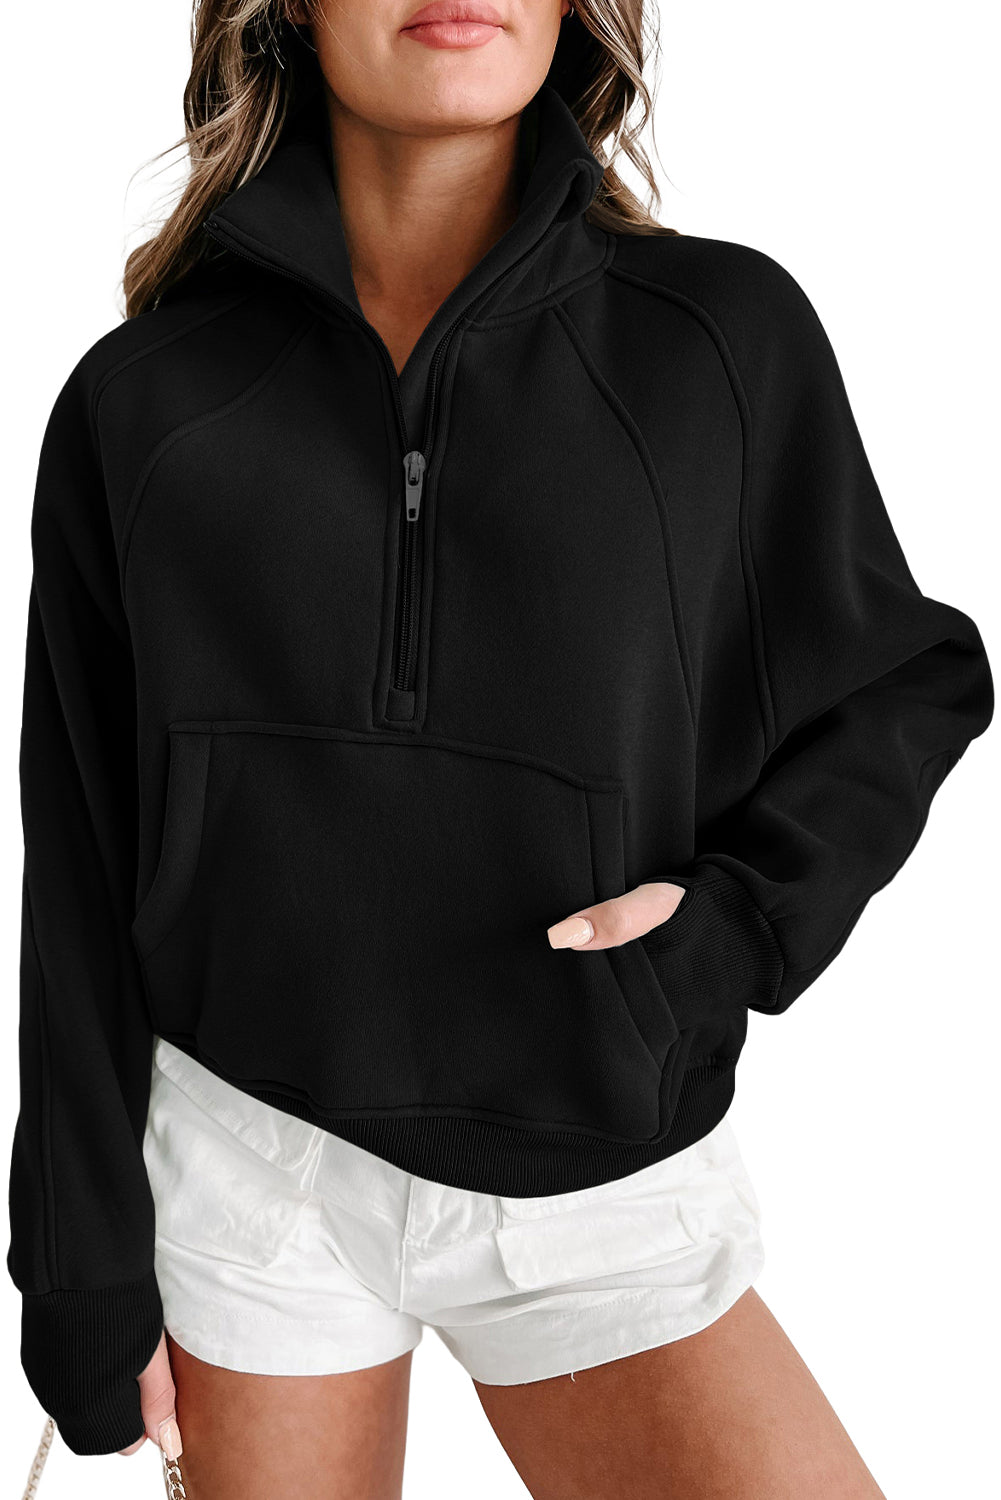 Black Zip Up Stand Collar Ribbed Thumbhole Sleeve Sweatshirt - SELFTRITSS